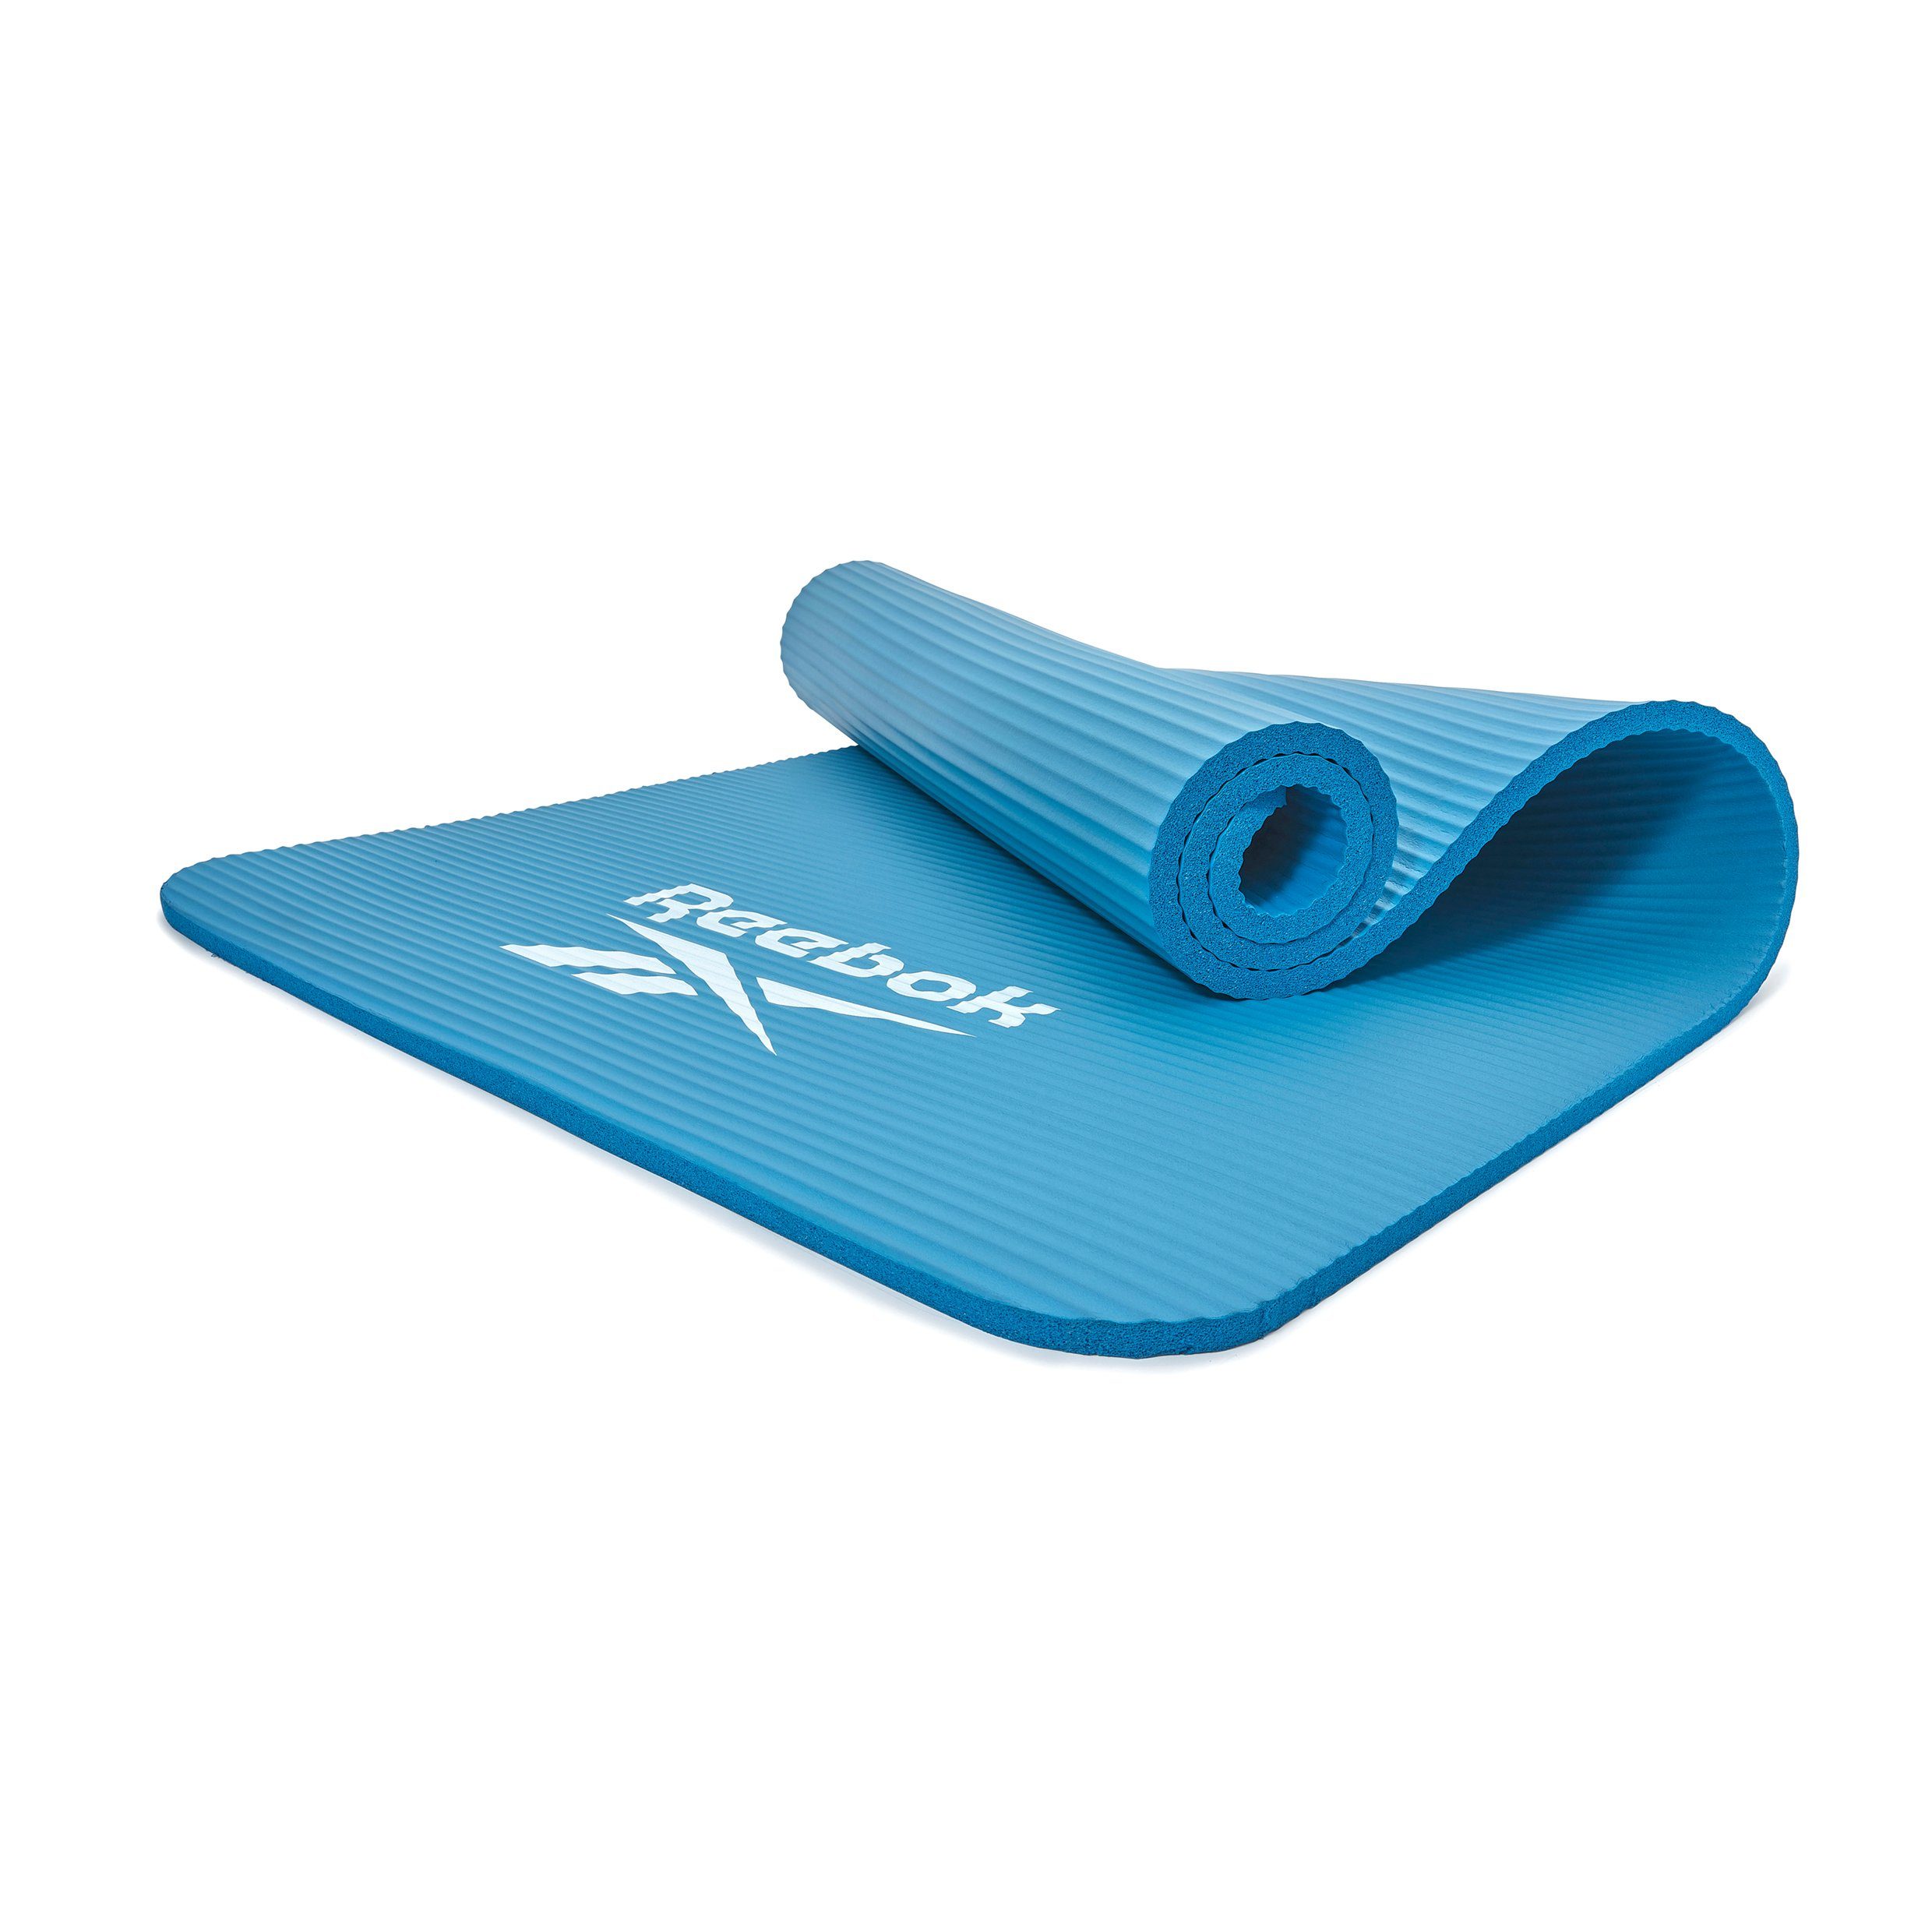 Reebok Fitnessmatte Reebok Fitness-/Trainingsmatte, 10mm, Rutschfeste Oberfläche